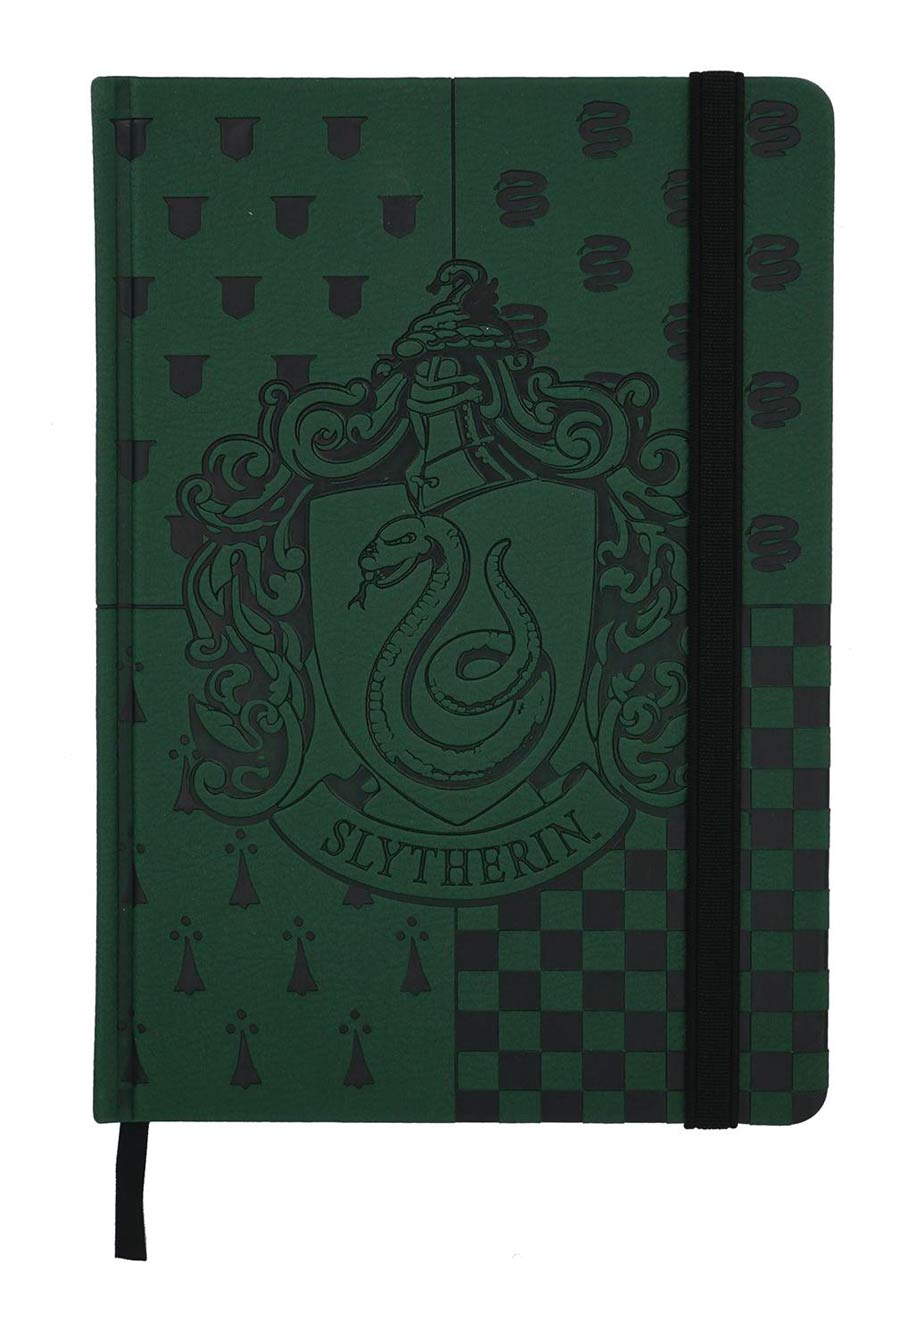 Harry Potter Crest Journal - Slytherin